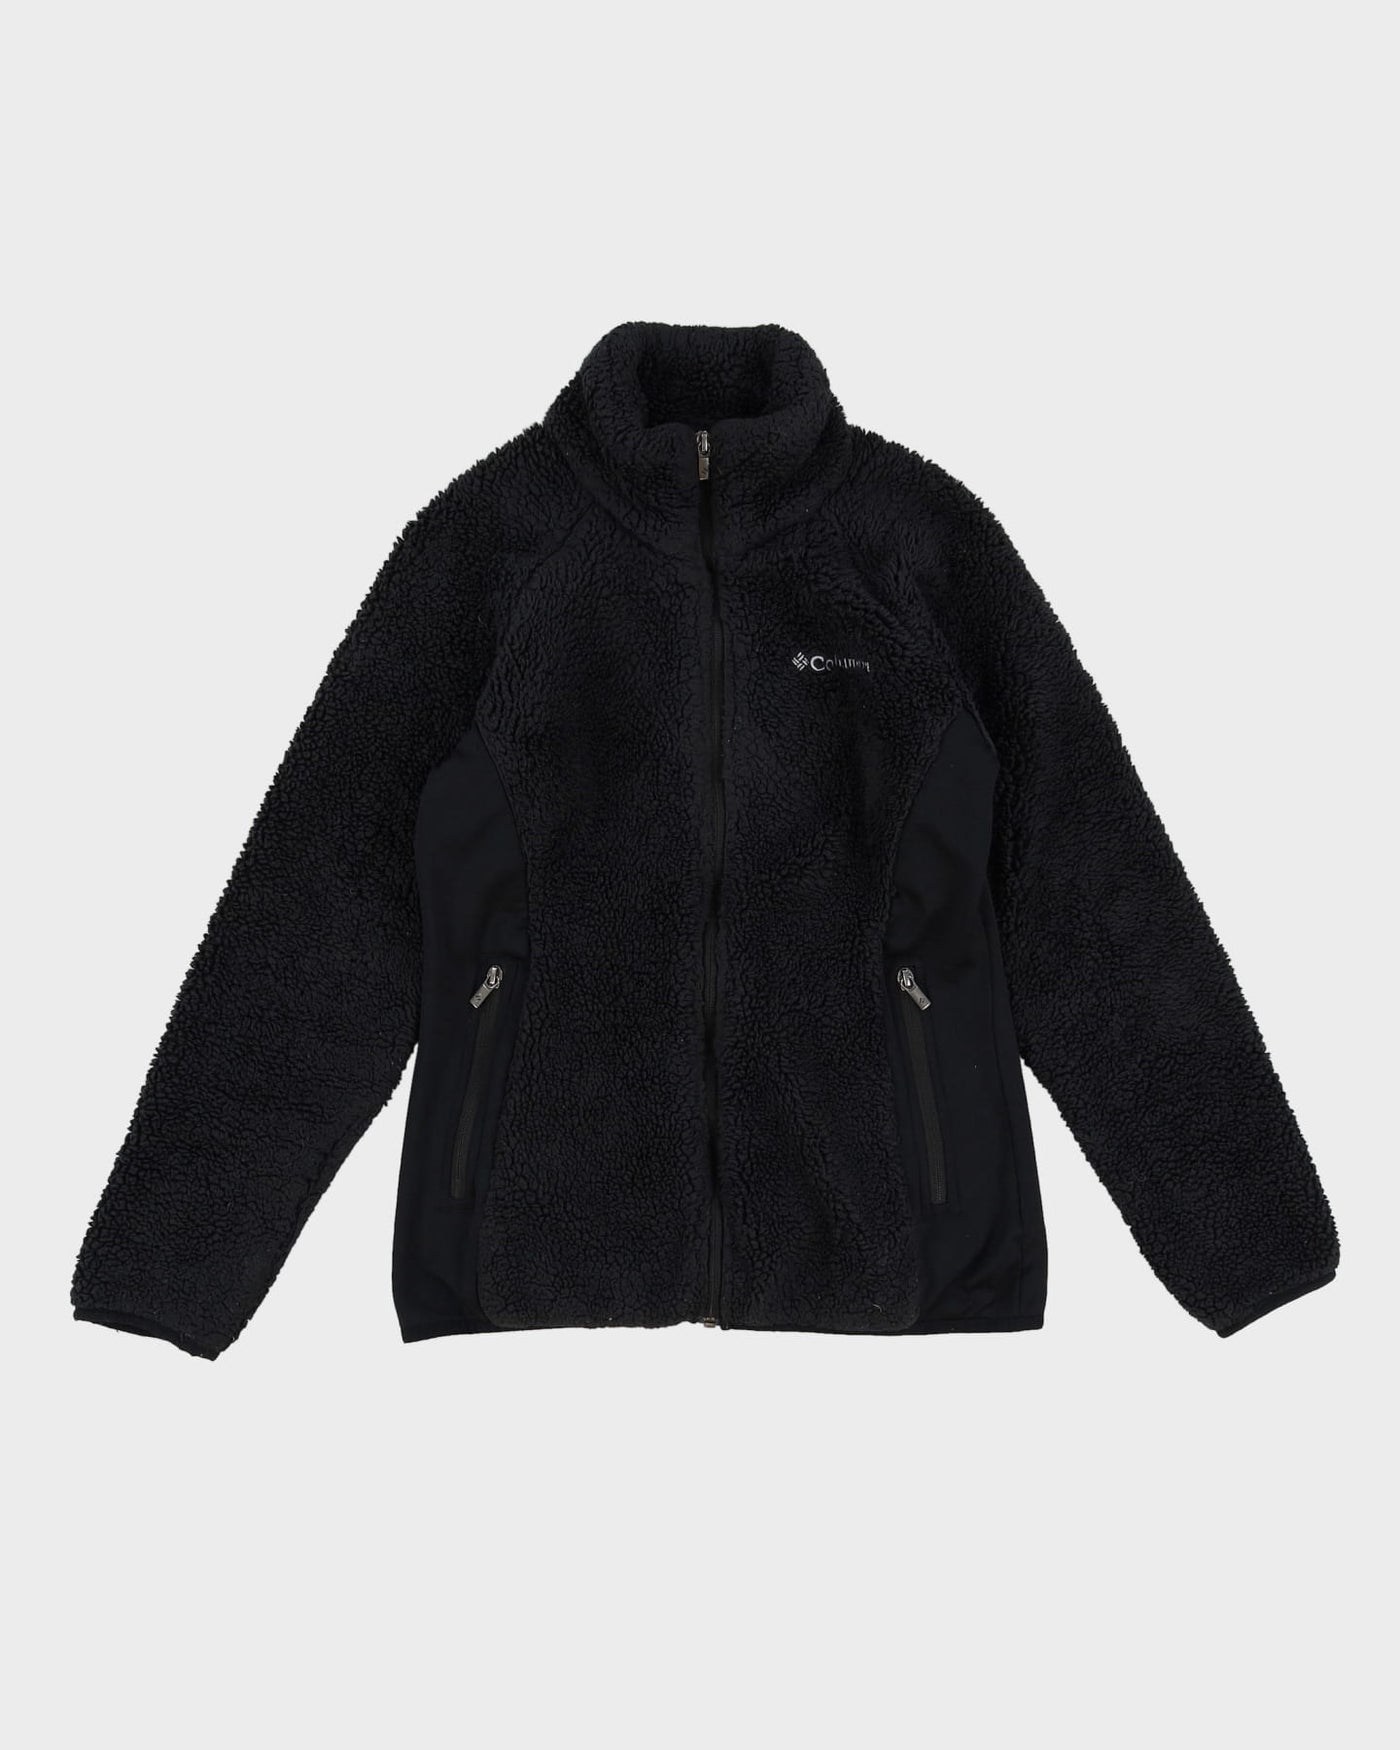 Columbia Black Fleece Jacket - S